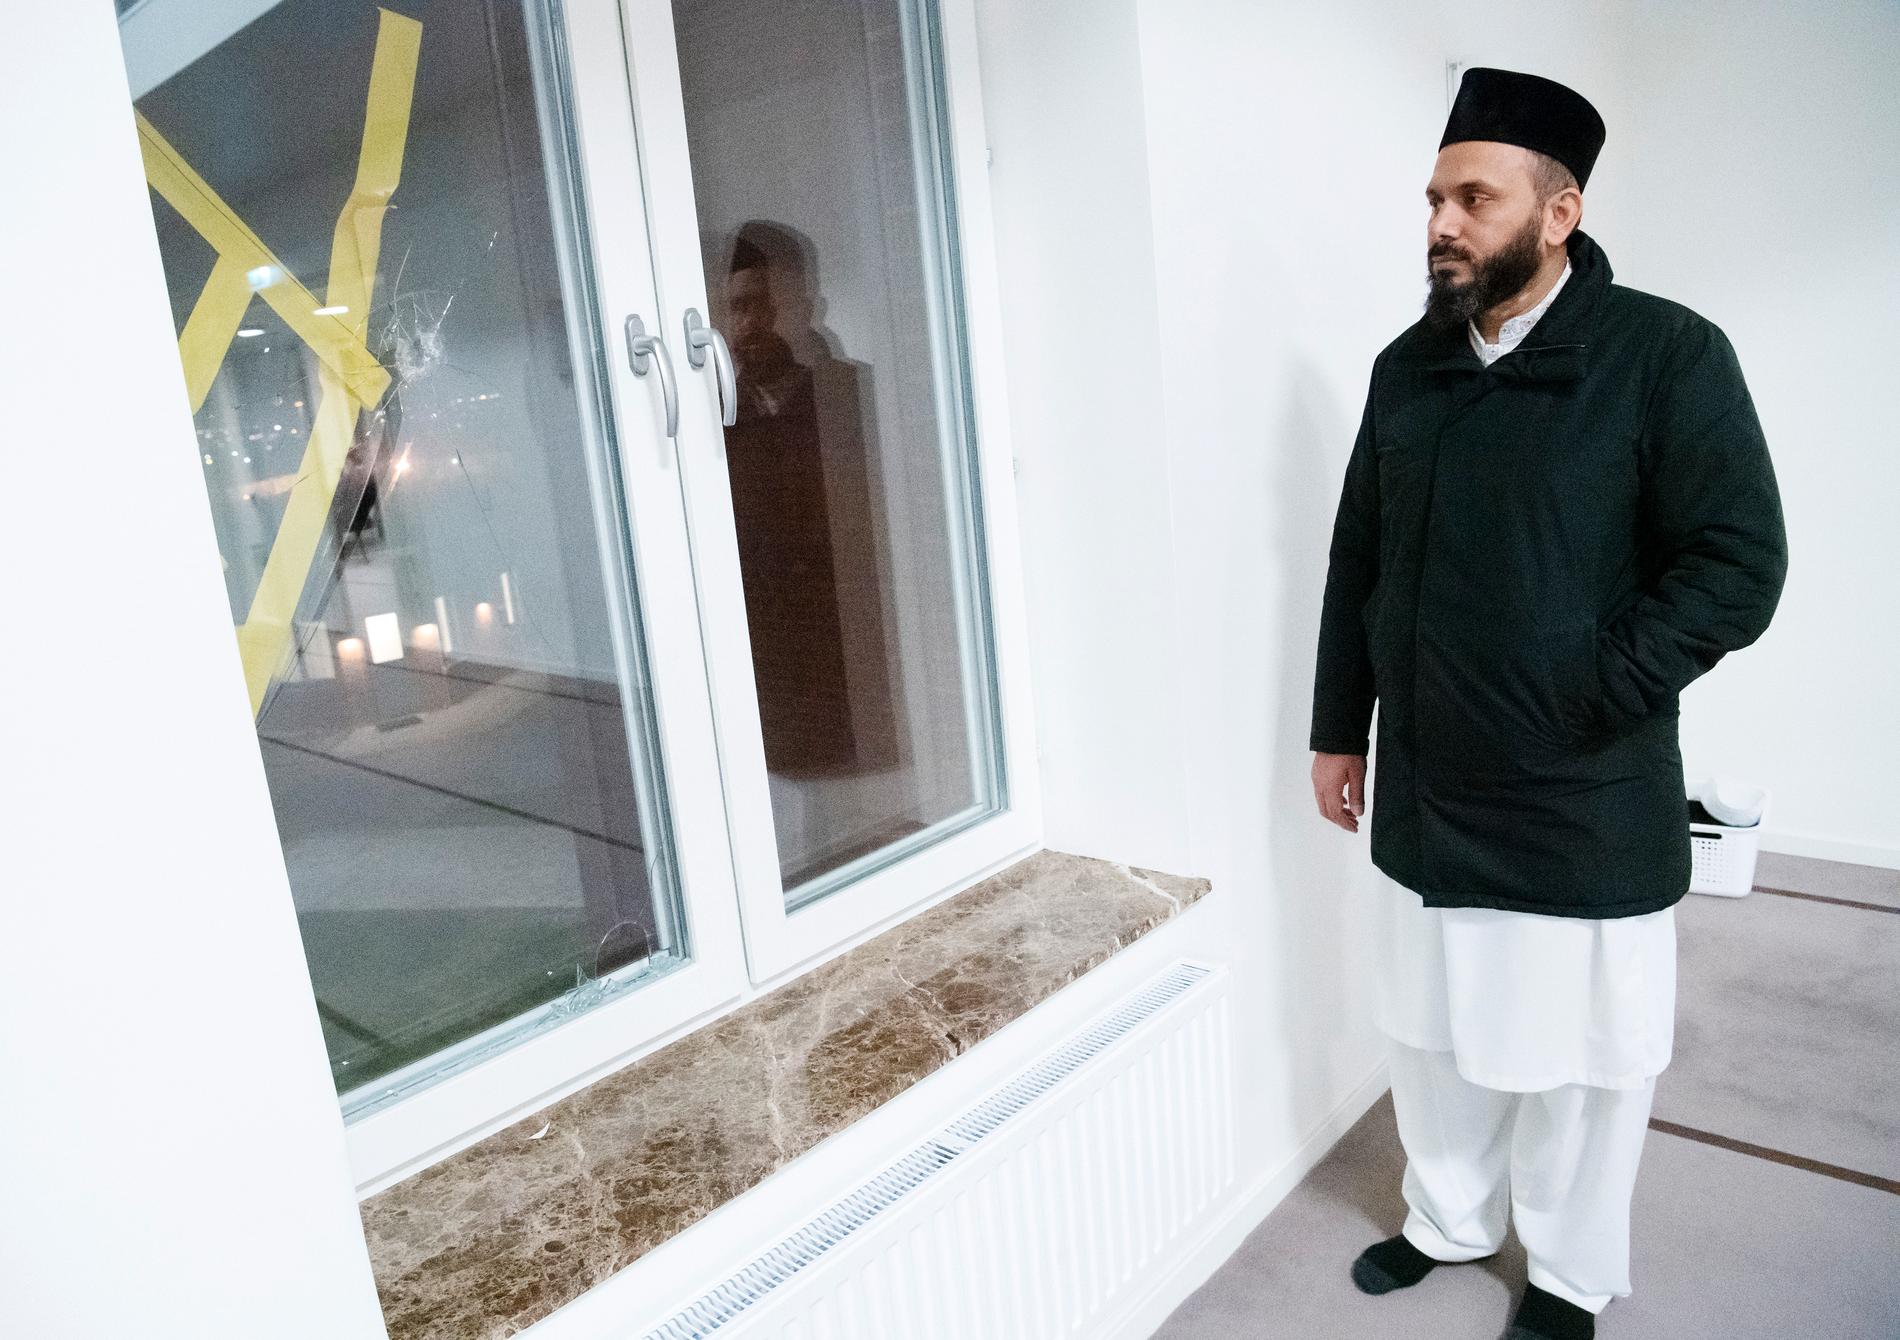 Imam Rizwan Afzal vid skotthålet i ett fönster på Mahmoodmoskén i östra Malmö på nyårsdagen. Skottlossningen inträffade under nyårsnatten.